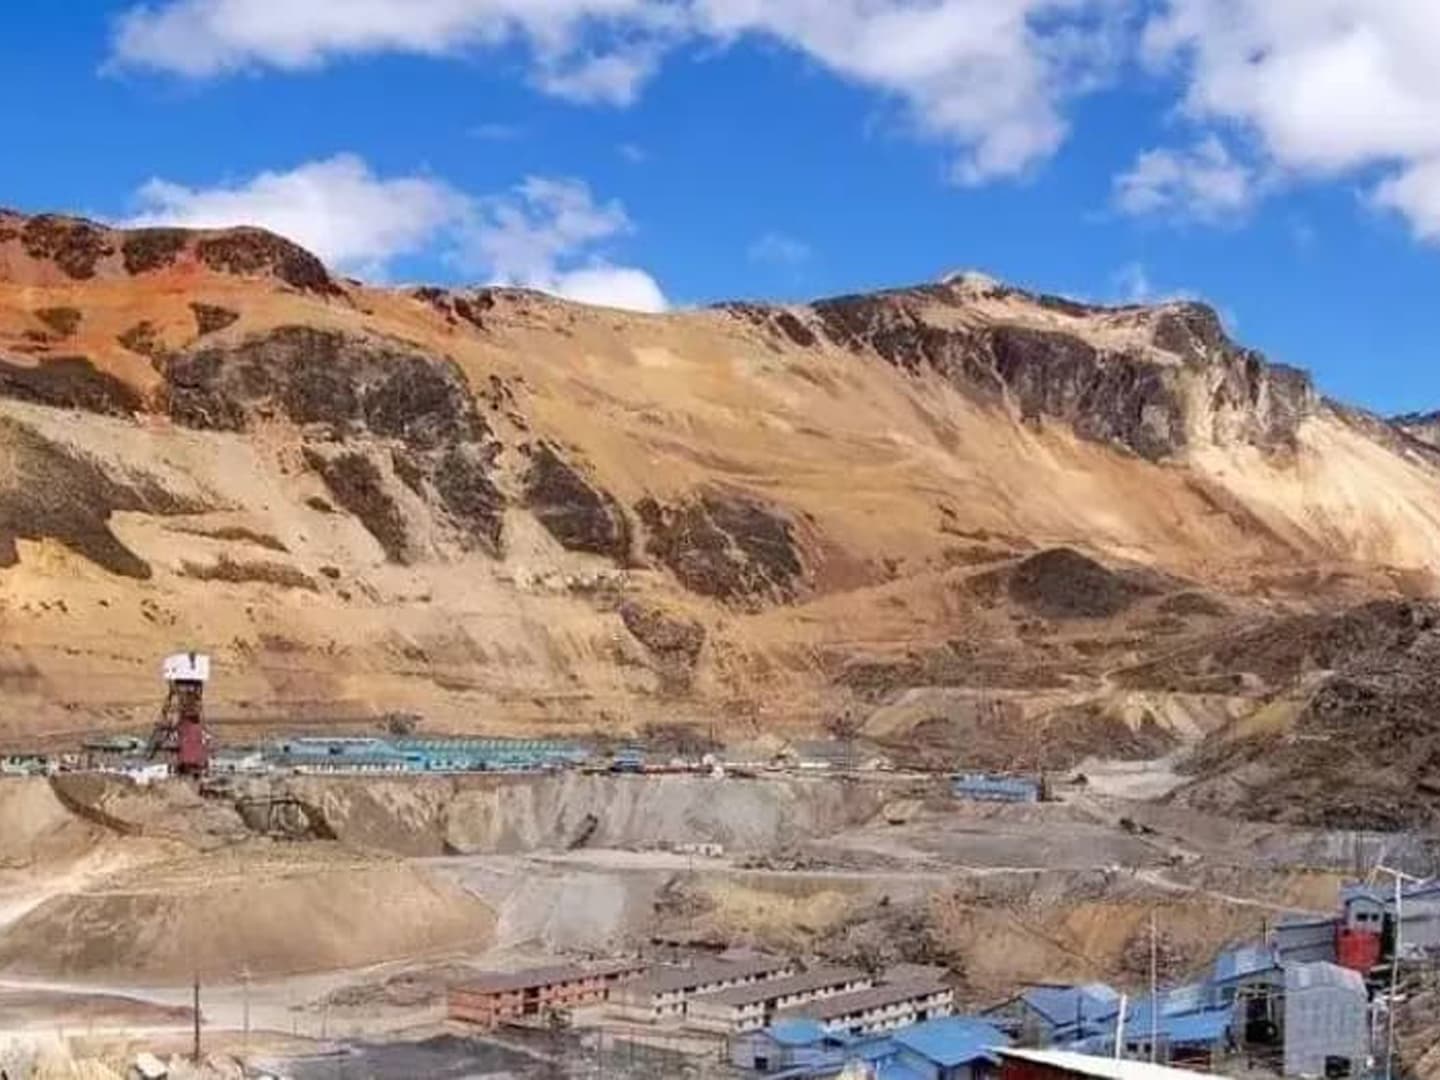 Chinalco Peru builds world-class super-large copper mine